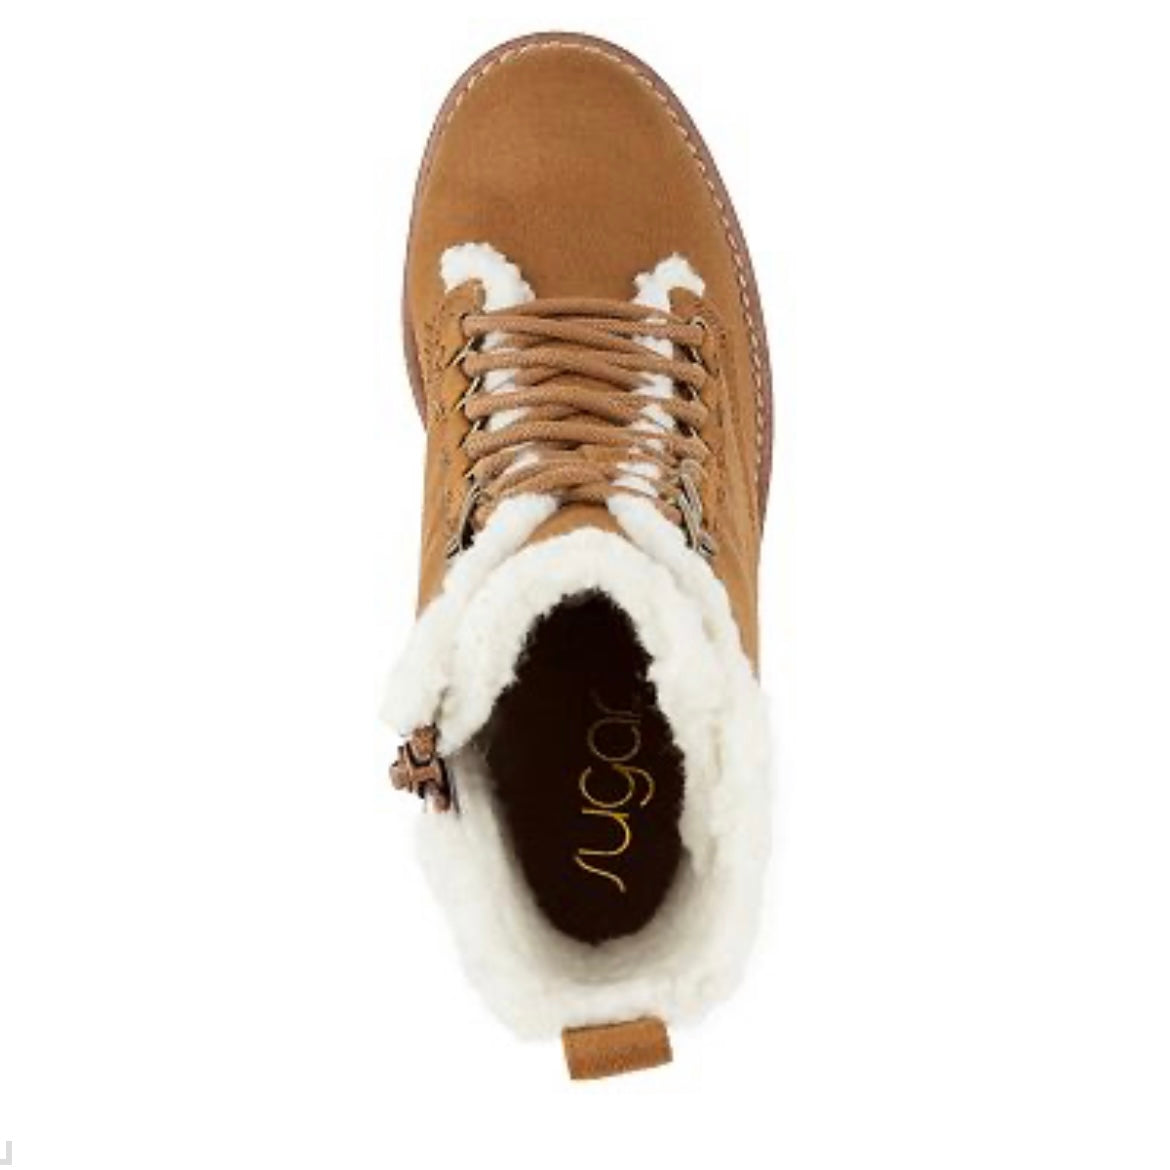 Quizzer Suede Cognac Size 11M Lace Up Round Toe Women's Winter Boots